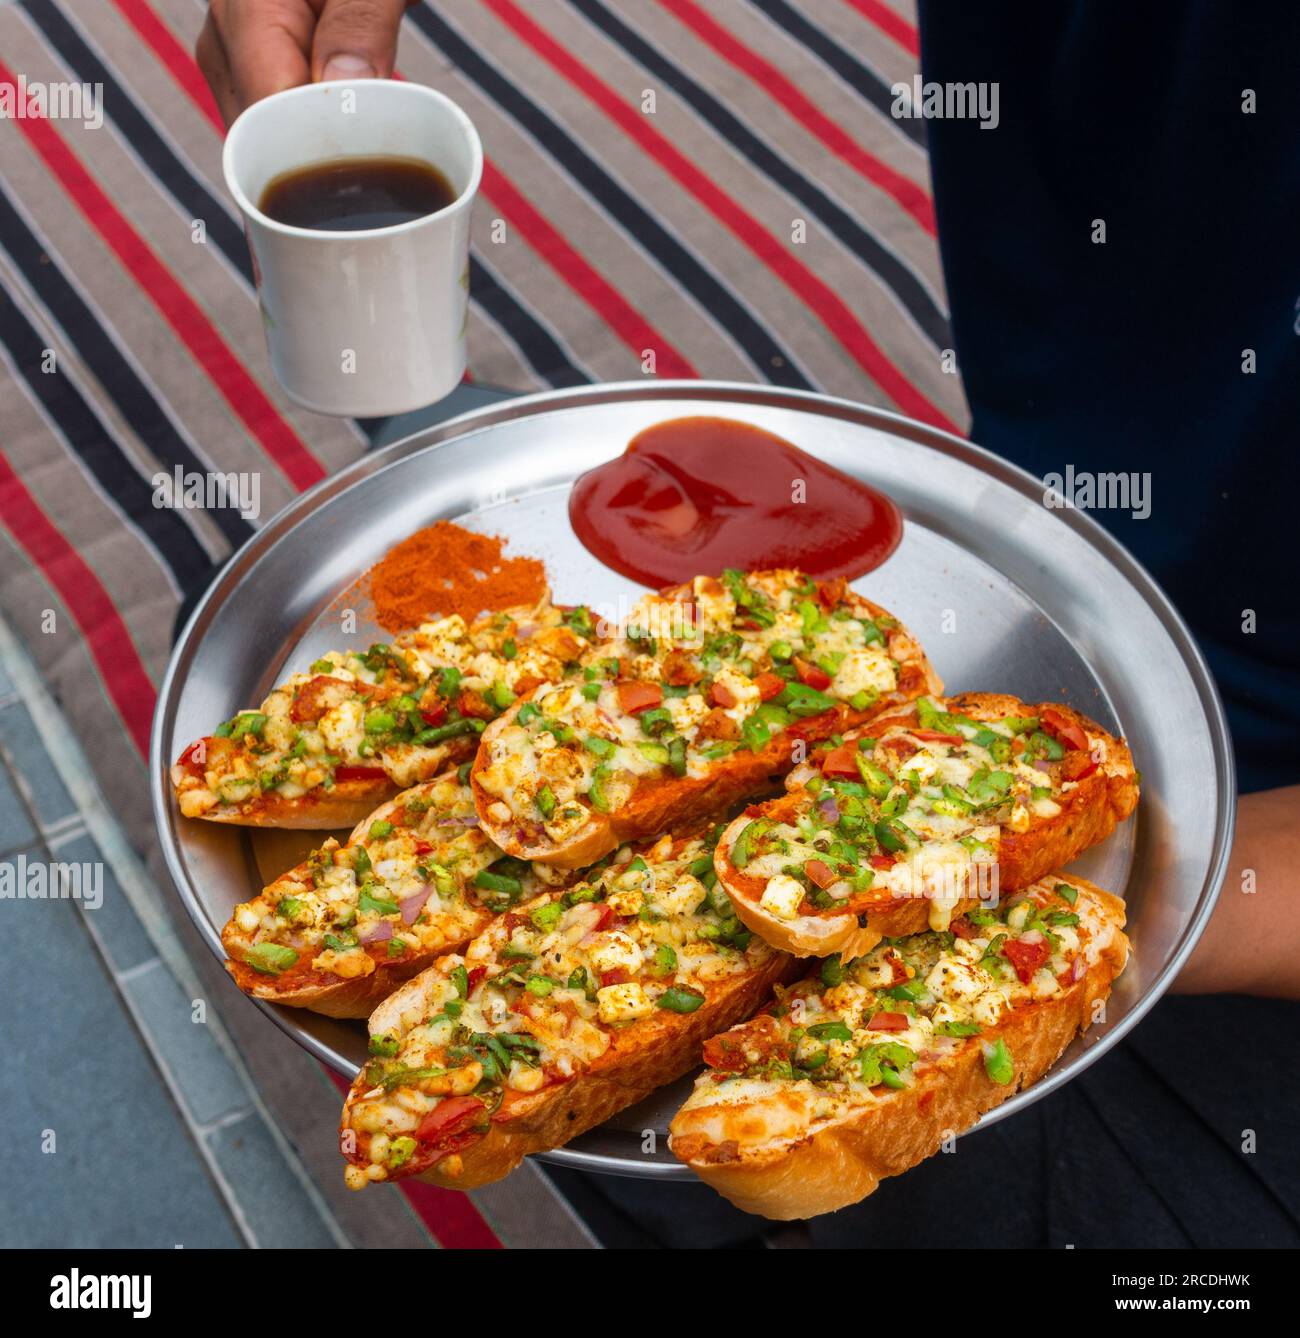 Mani con caffè nero e pane all'aglio allo zenzero fatto in casa con formaggio e condimenti alle erbe indiane. India Foto Stock